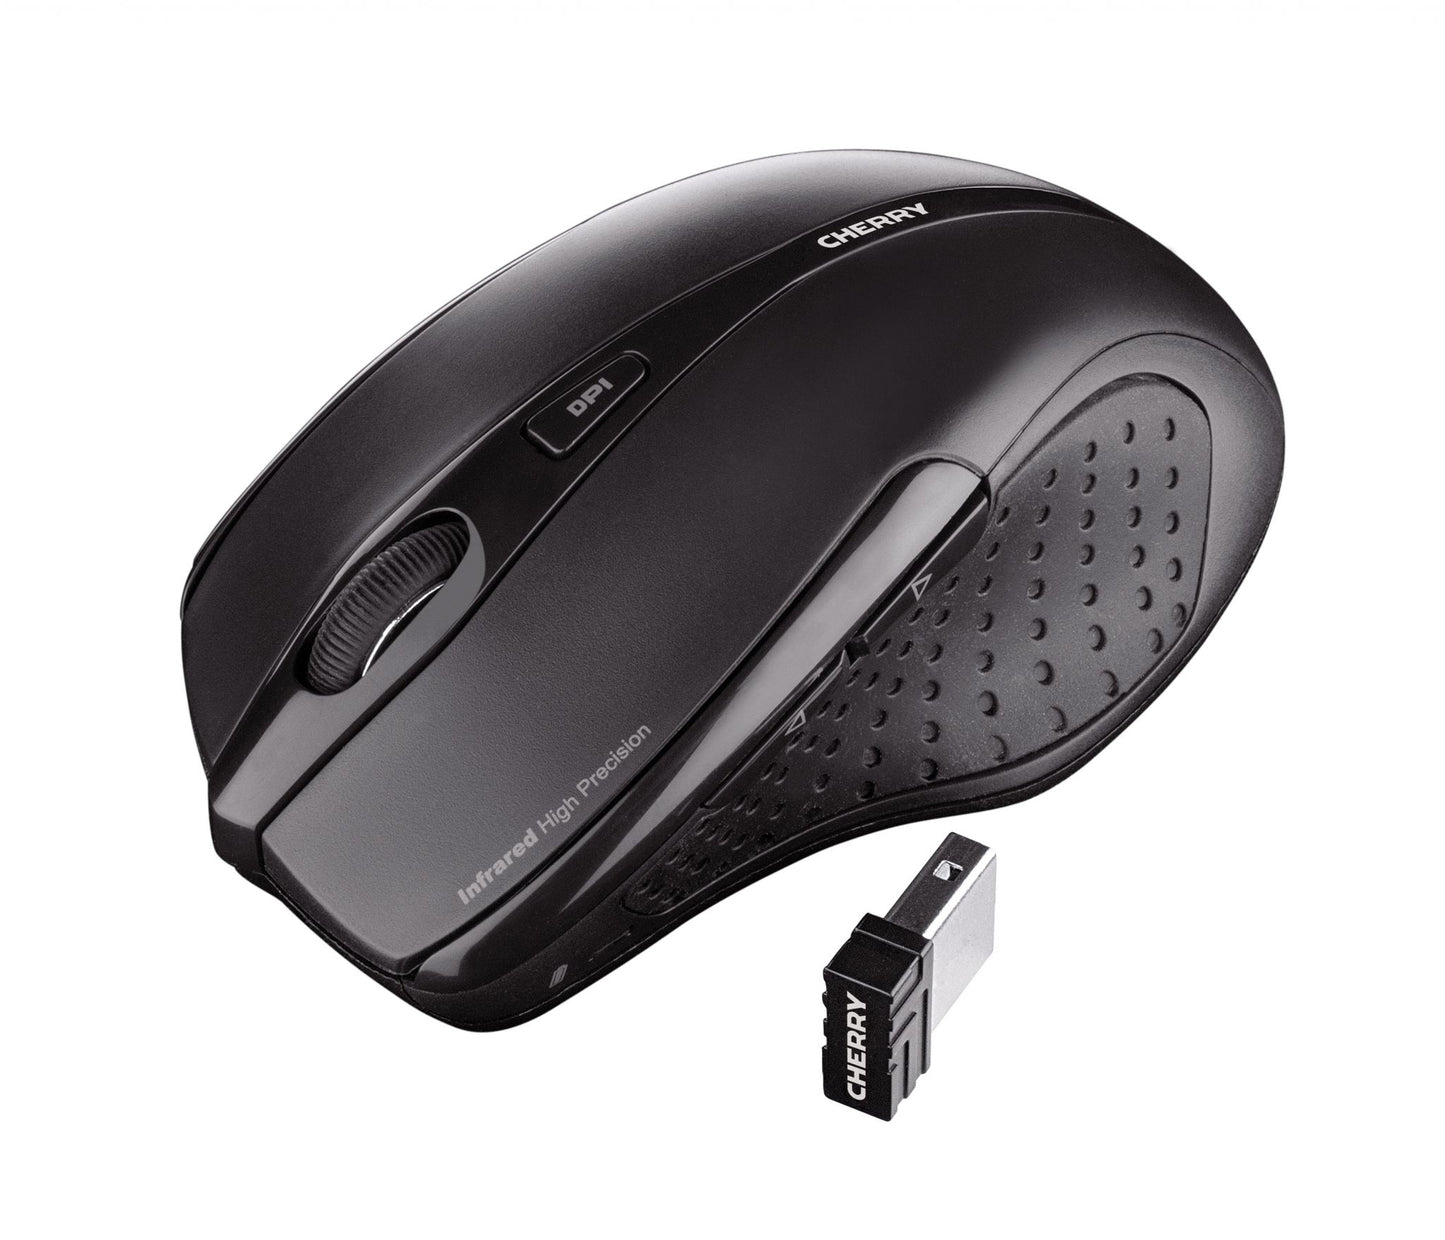 CHERRY MW 3000 Wireless Mouse, Black, USB